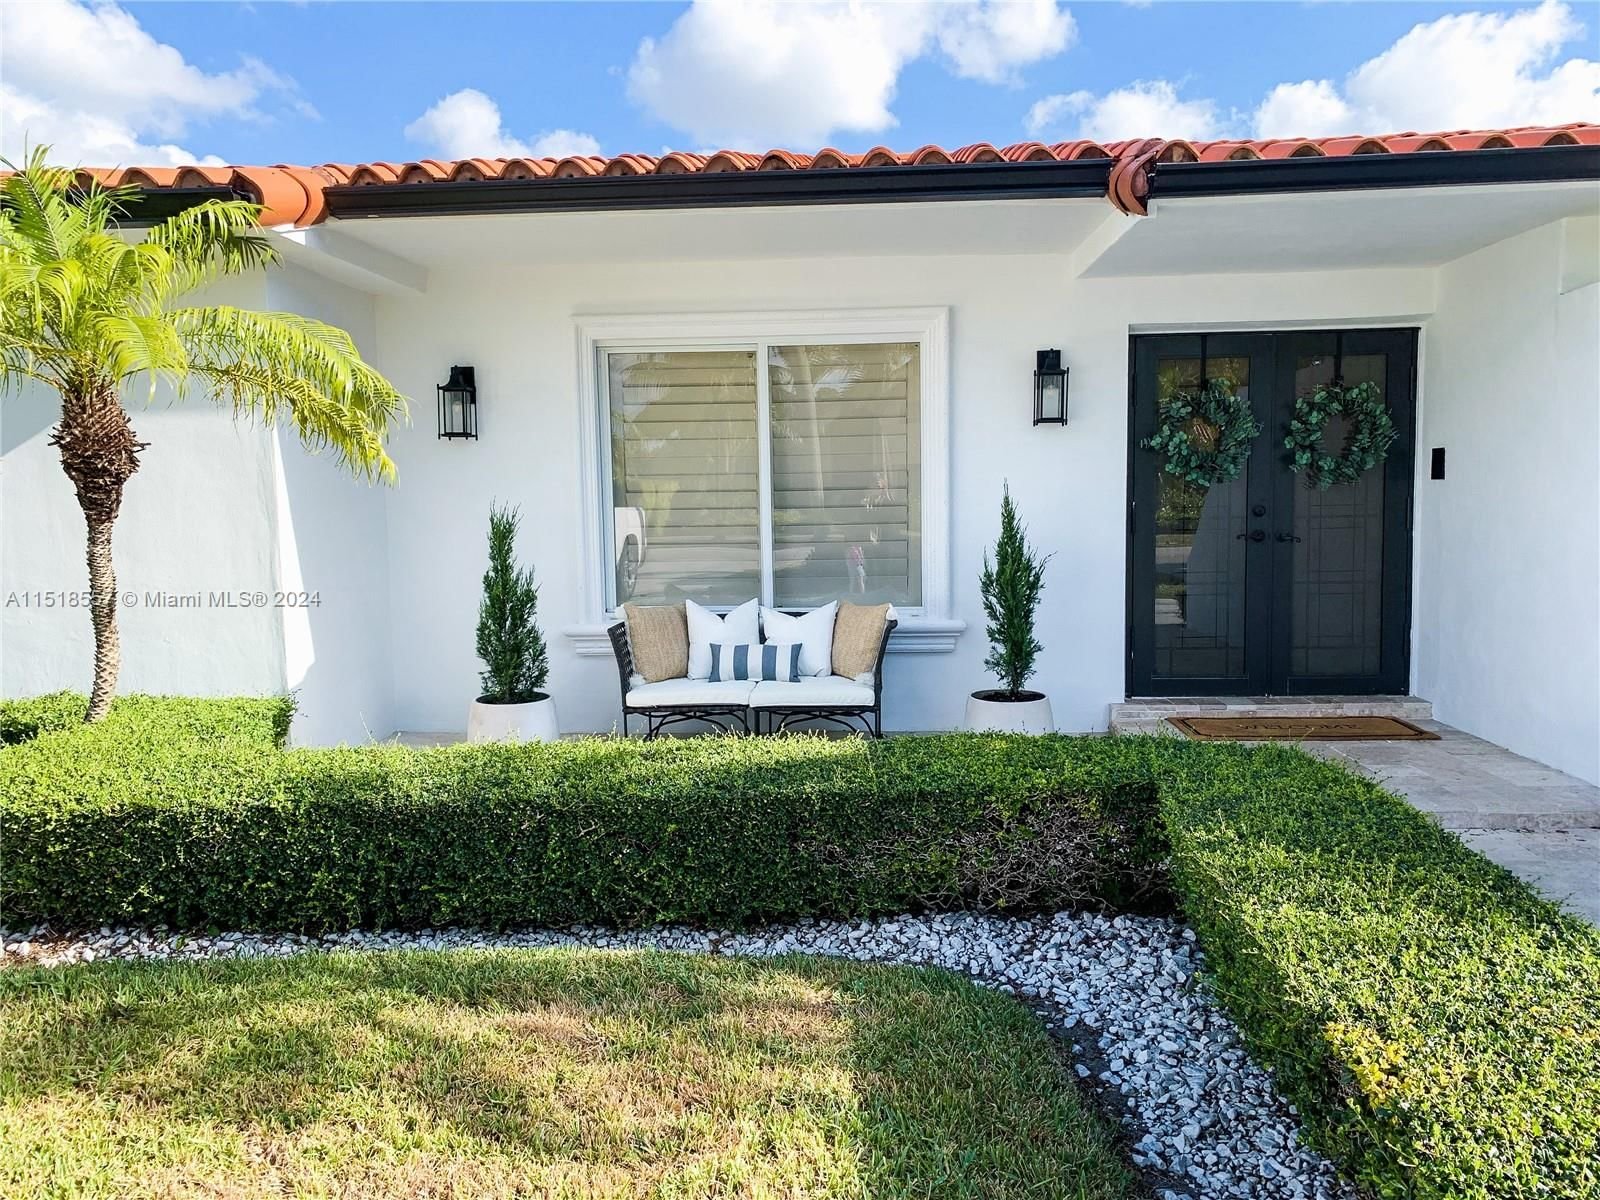 Real estate property located at 12741 34th St, Miami-Dade County, ANNETTE SUB, Miami, FL